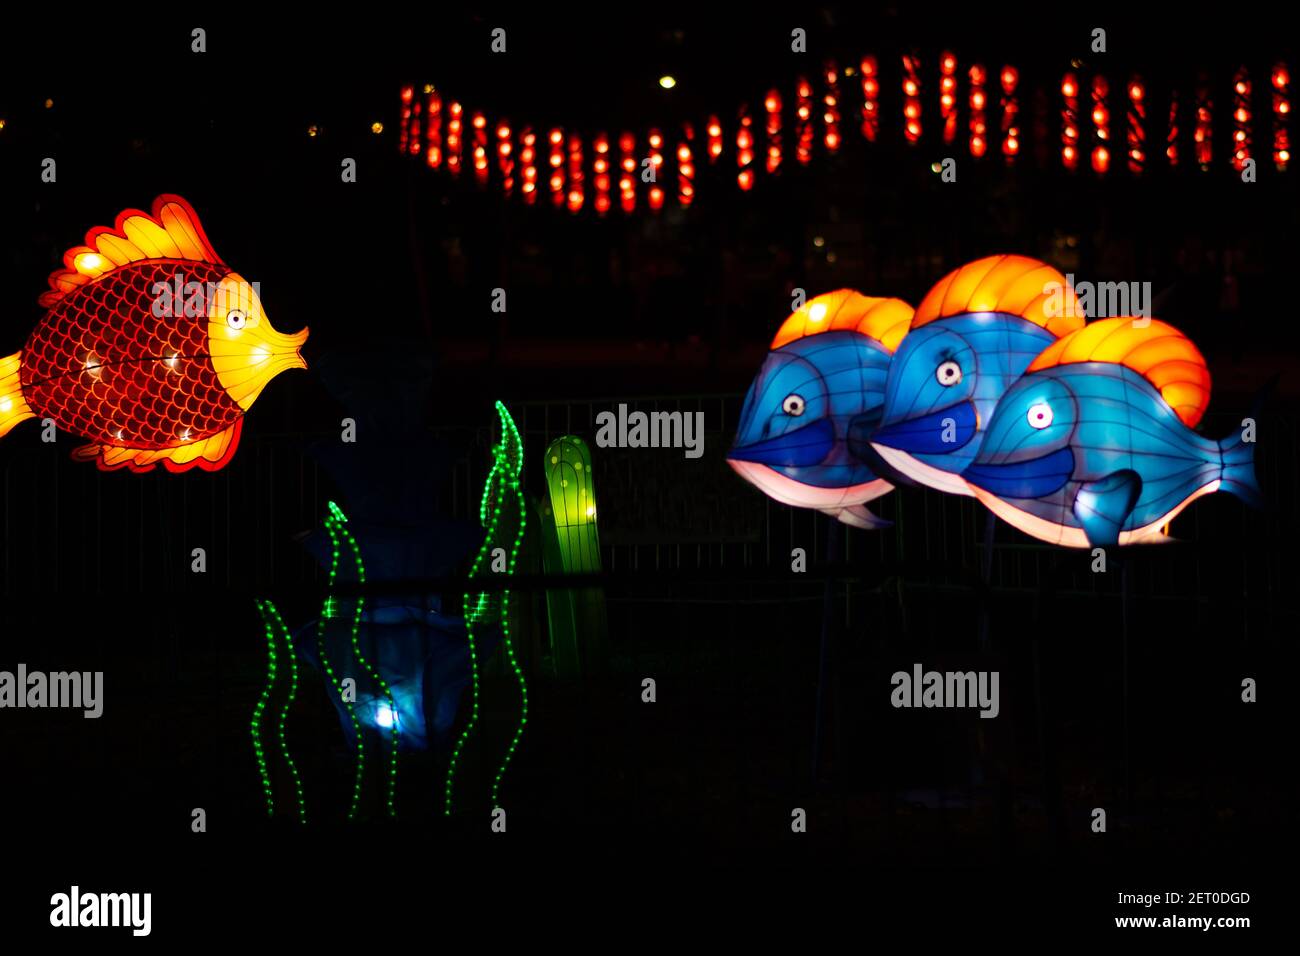 Festival des lanternes chinoises. Une lanterne de poisson colorée nageait au-dessus de l'algue. Trois poissons bleus sont dans un fond flou. Banque D'Images